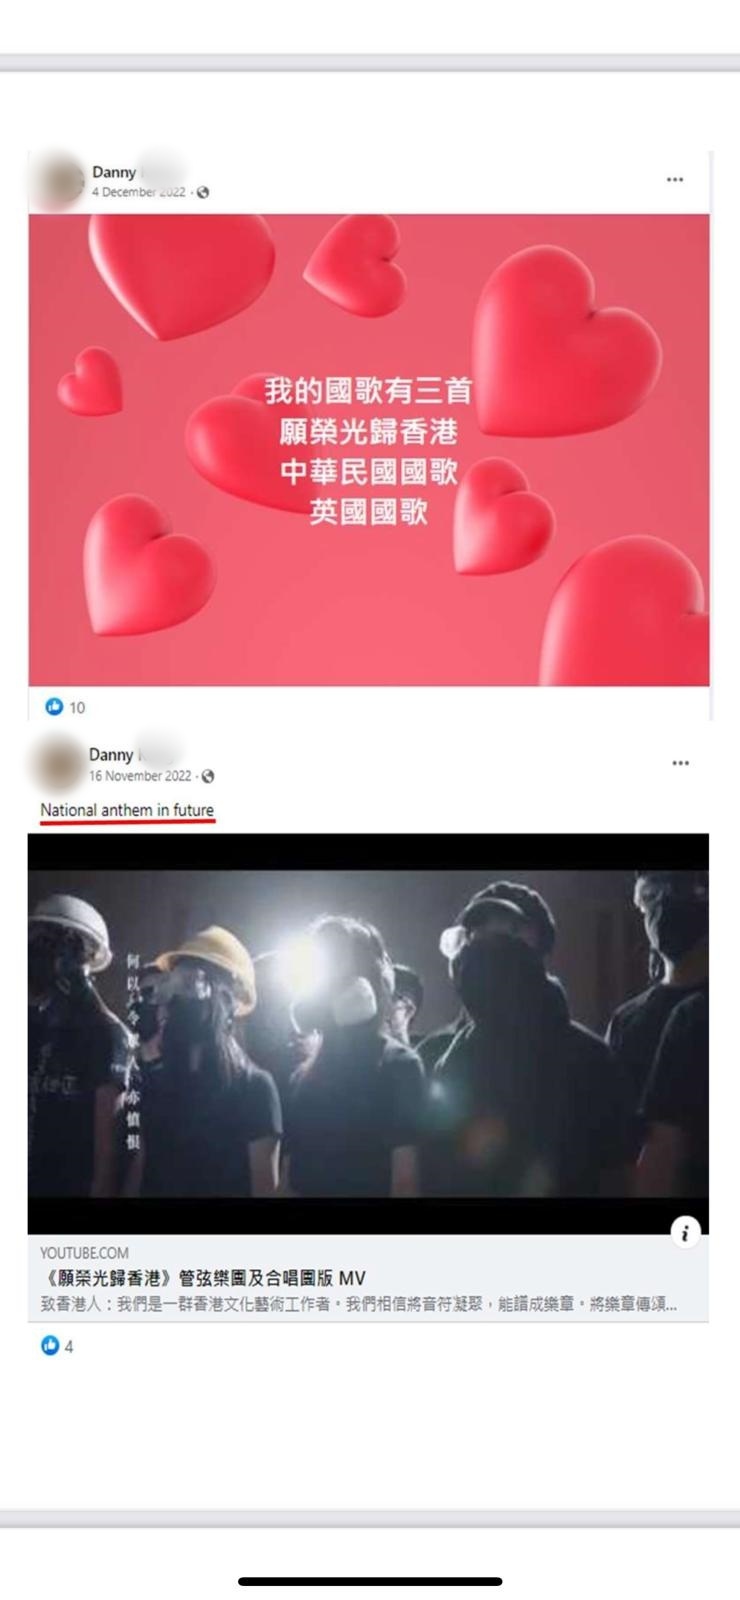 被捕人的社交平台多次转载「独歌」《愿荣光归香港》 并称之为「未来的国歌」等。